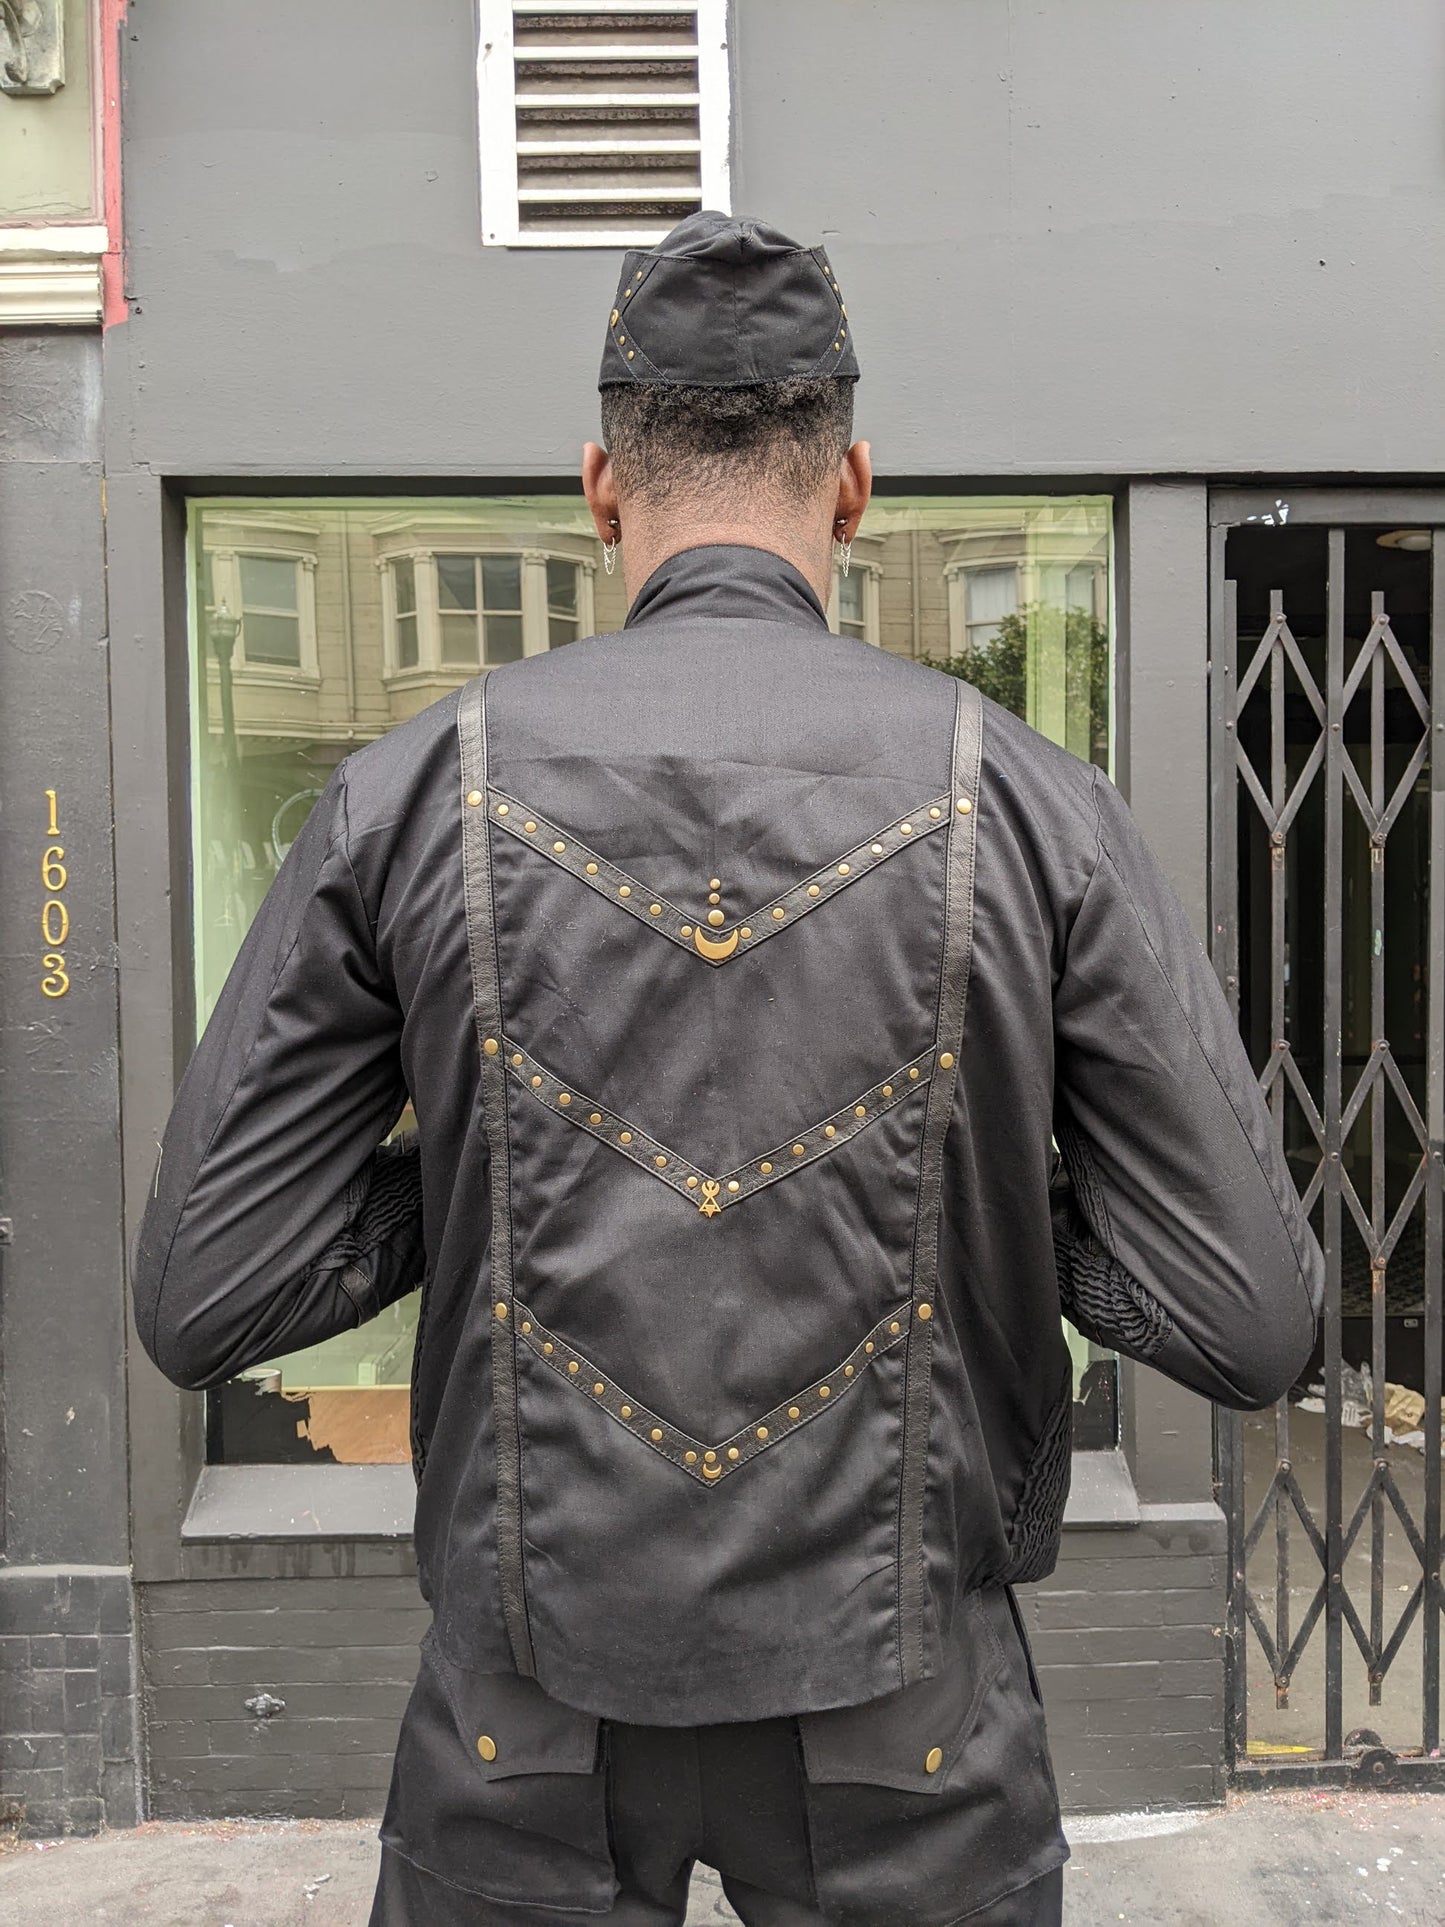 Men's Lunar Leather trim Jacket